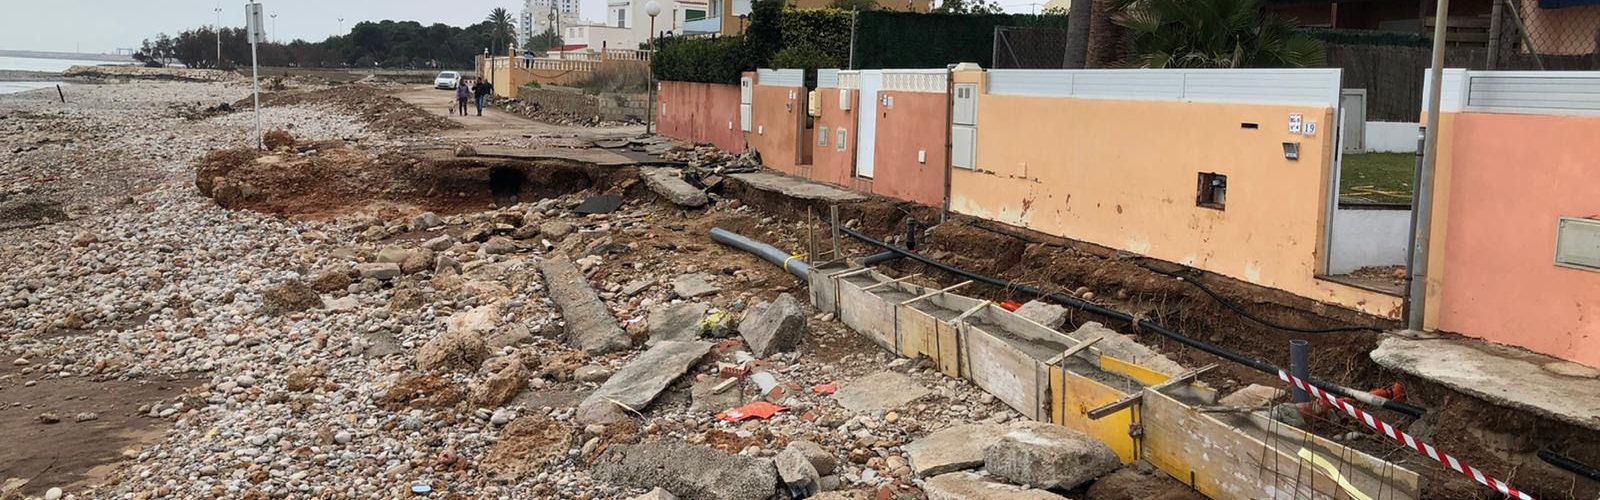 Costes destinarà 500.000 euros per a reparar el litoral de Vinaròs malmés per Glòria